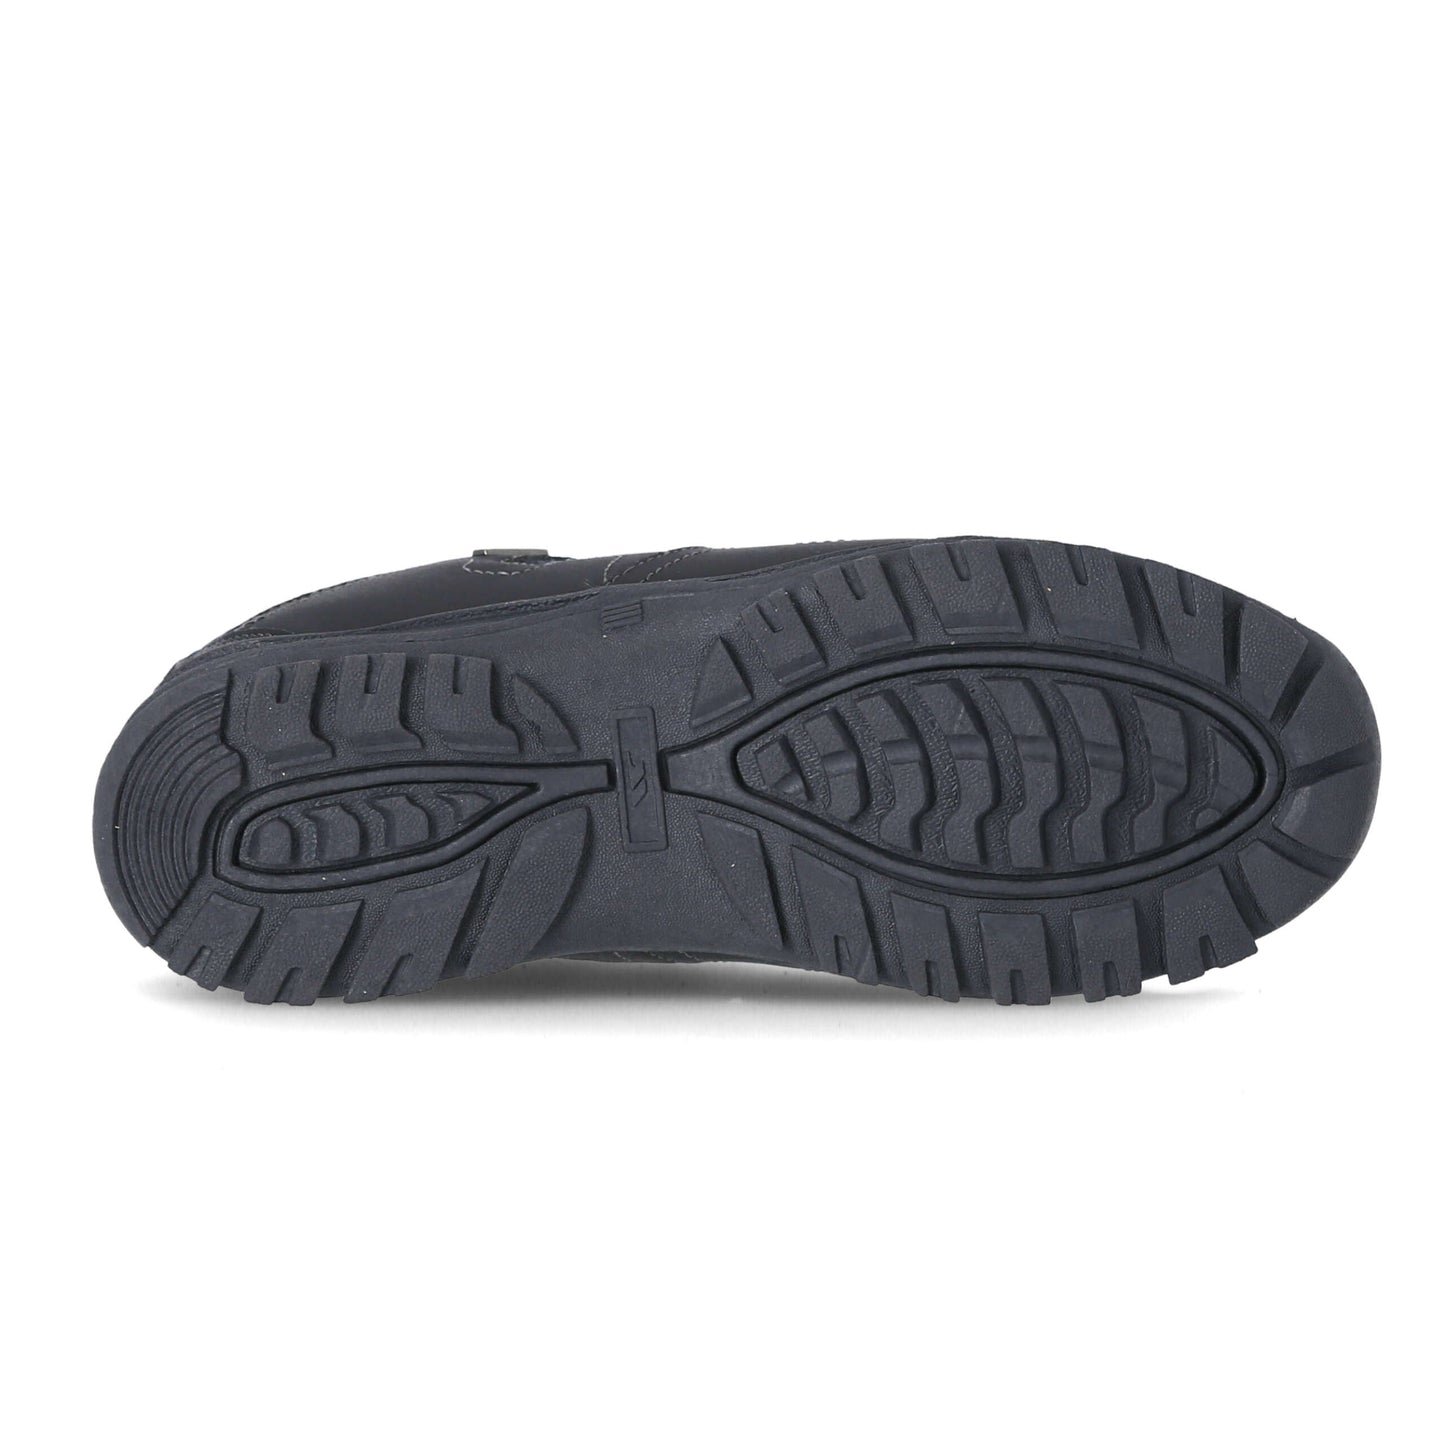 Mitzi - Women's Waterproof Walking Shoes - Charcoal